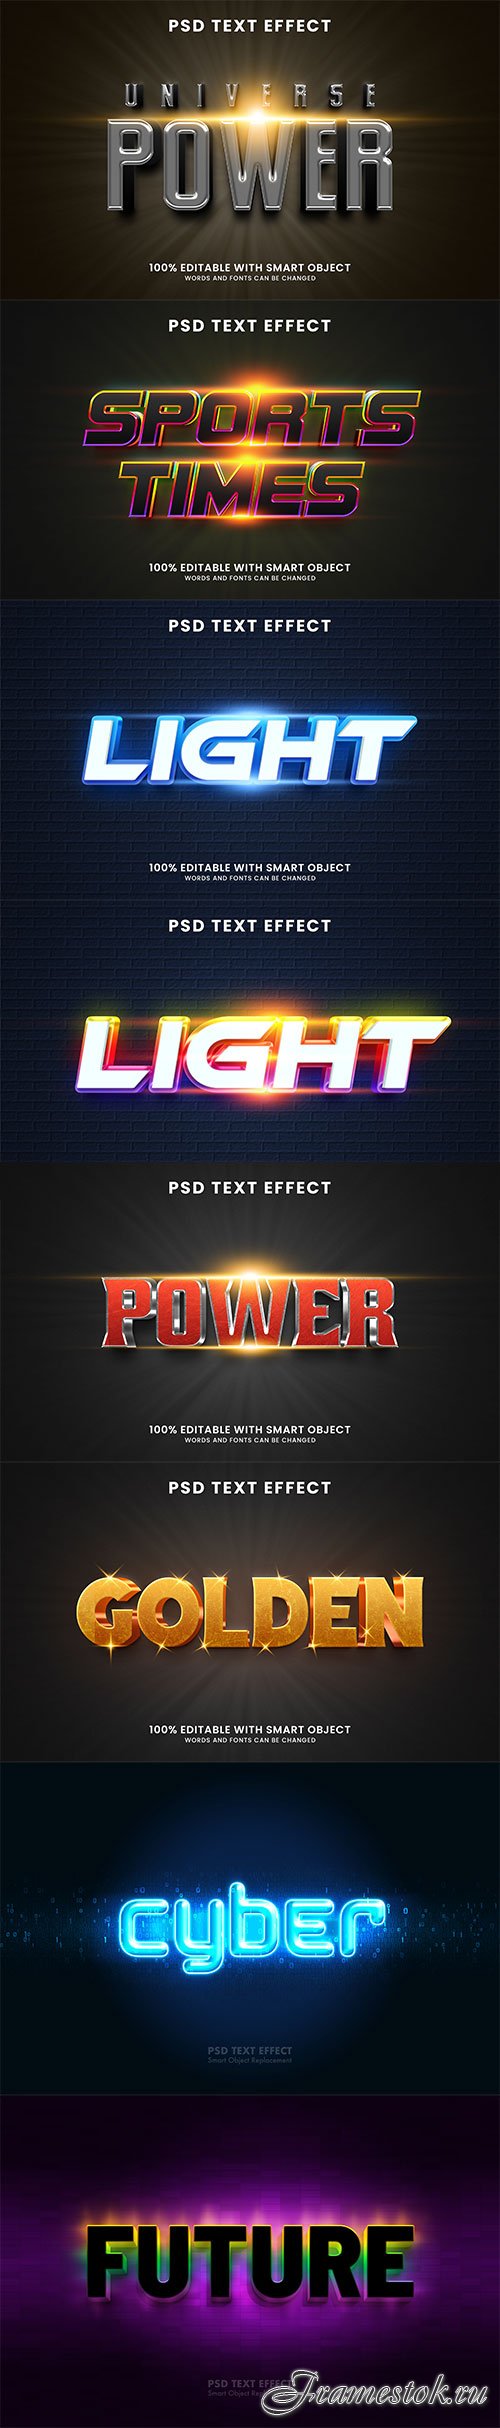 Psd text effect set vol 74